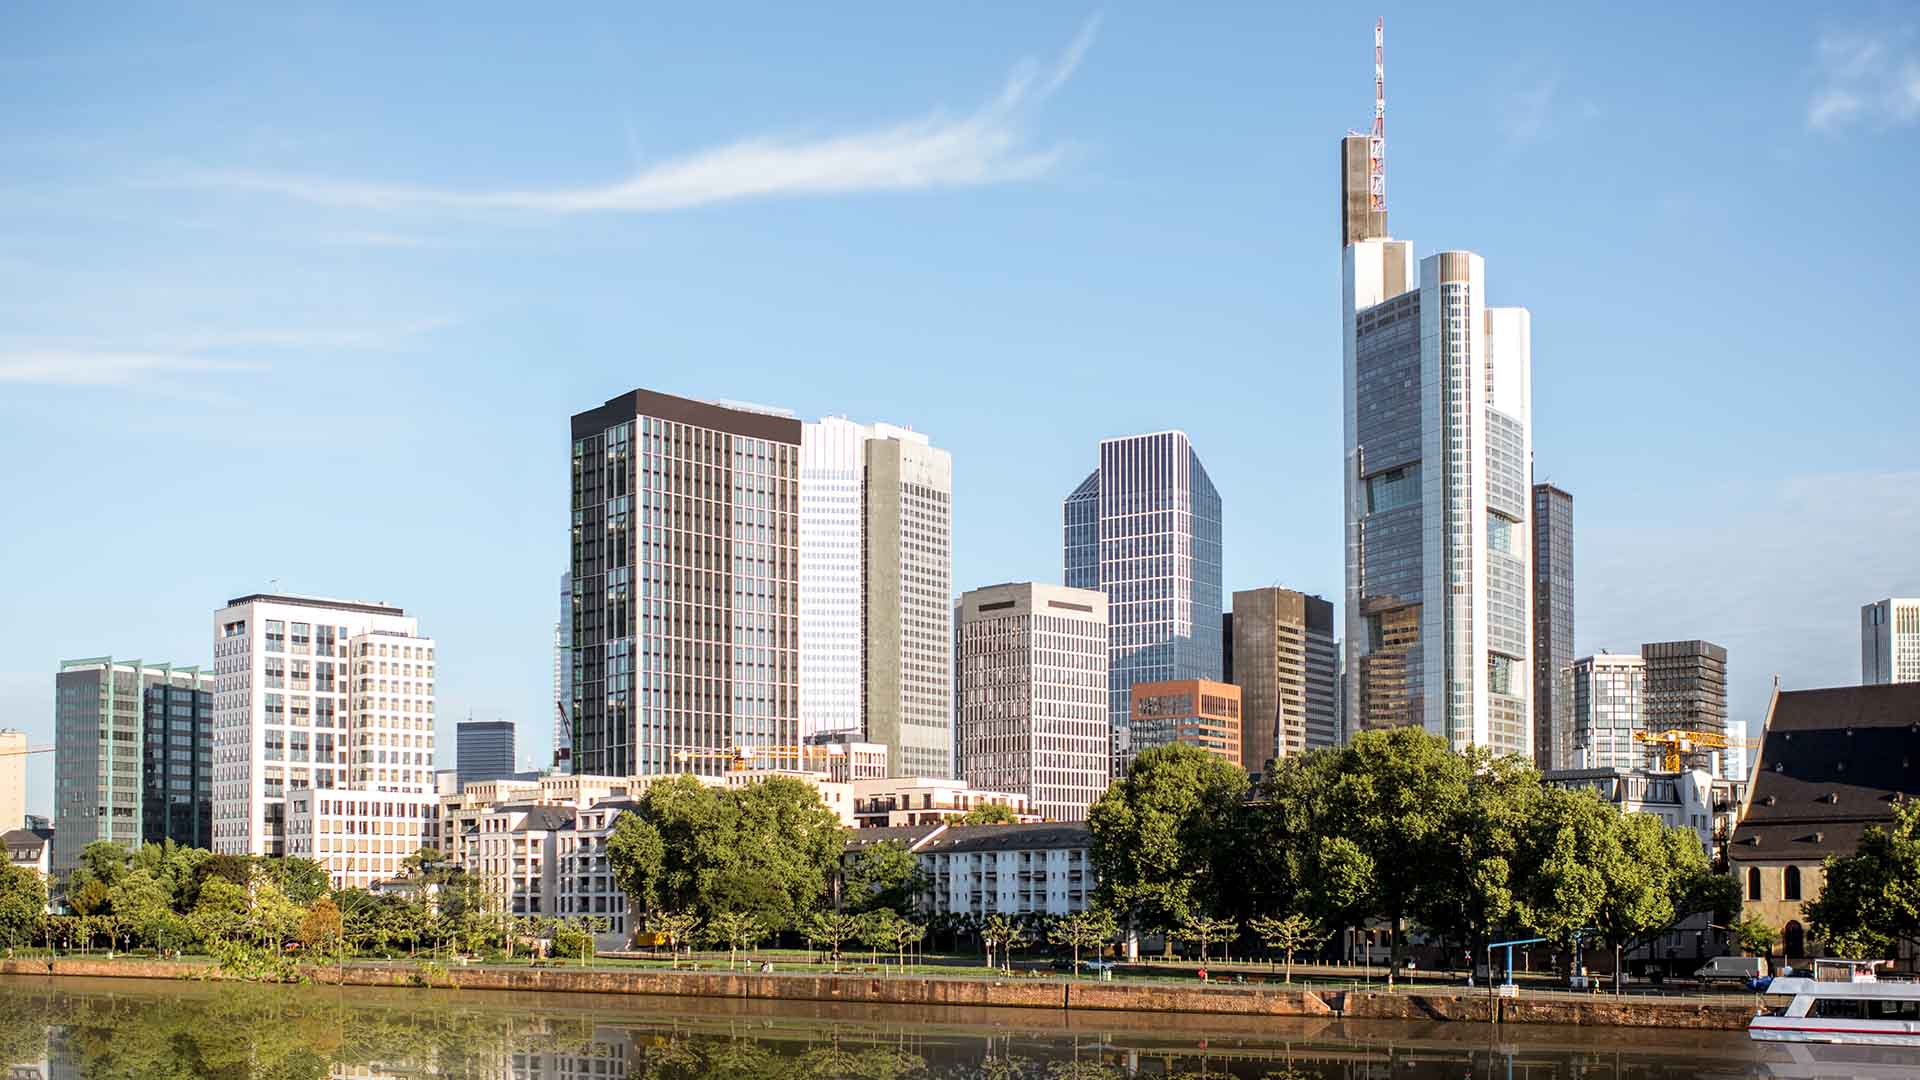 Average Salary in Frankfurt